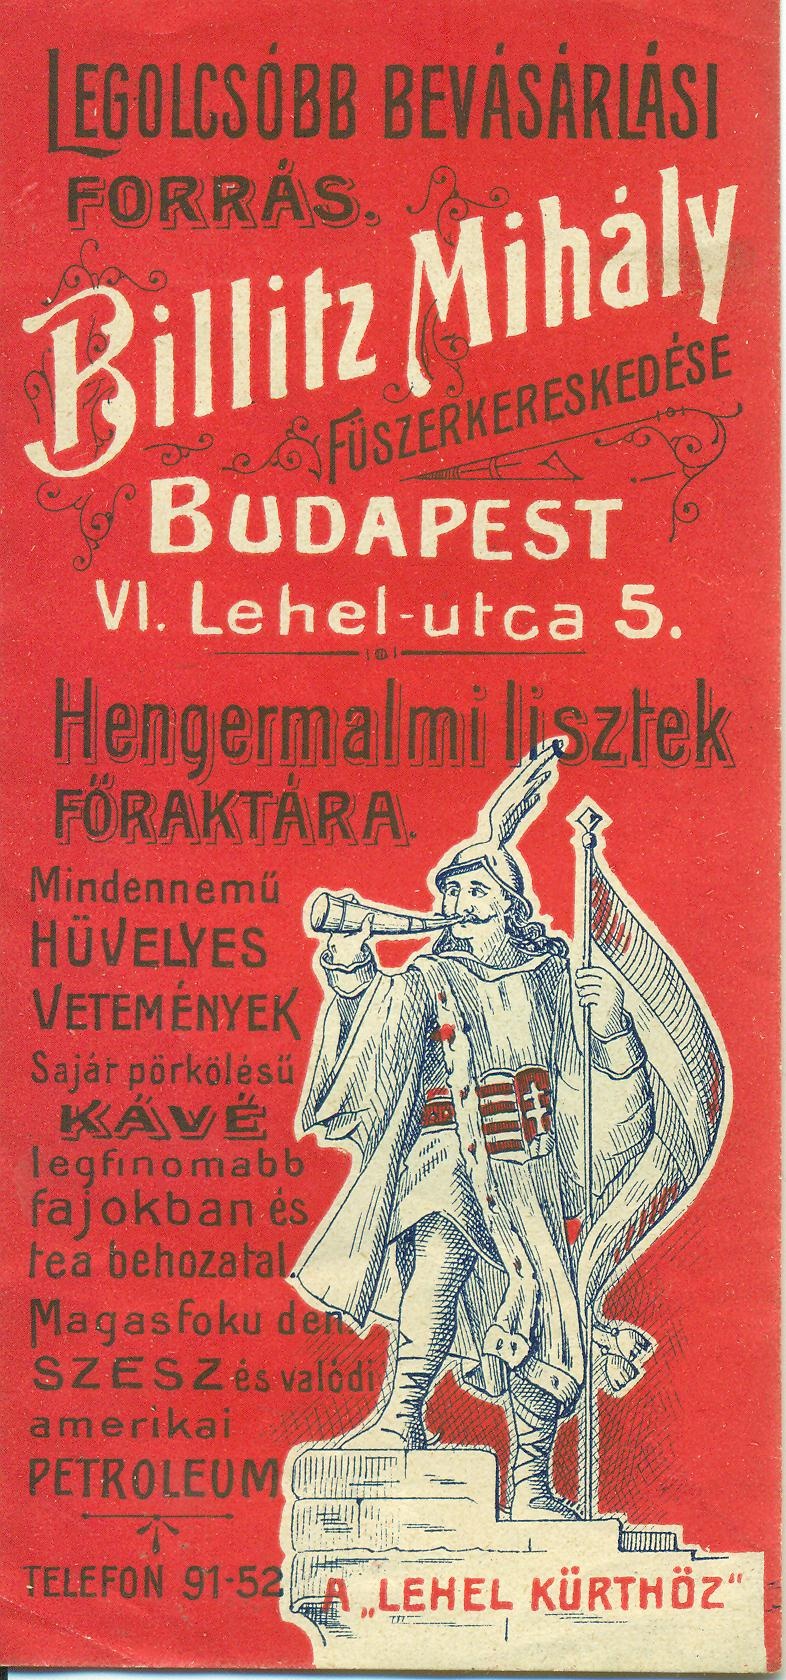 Billitz Mihály füszerkereskedése (Magyar Kereskedelmi és Vendéglátóipari Múzeum CC BY-NC-SA)